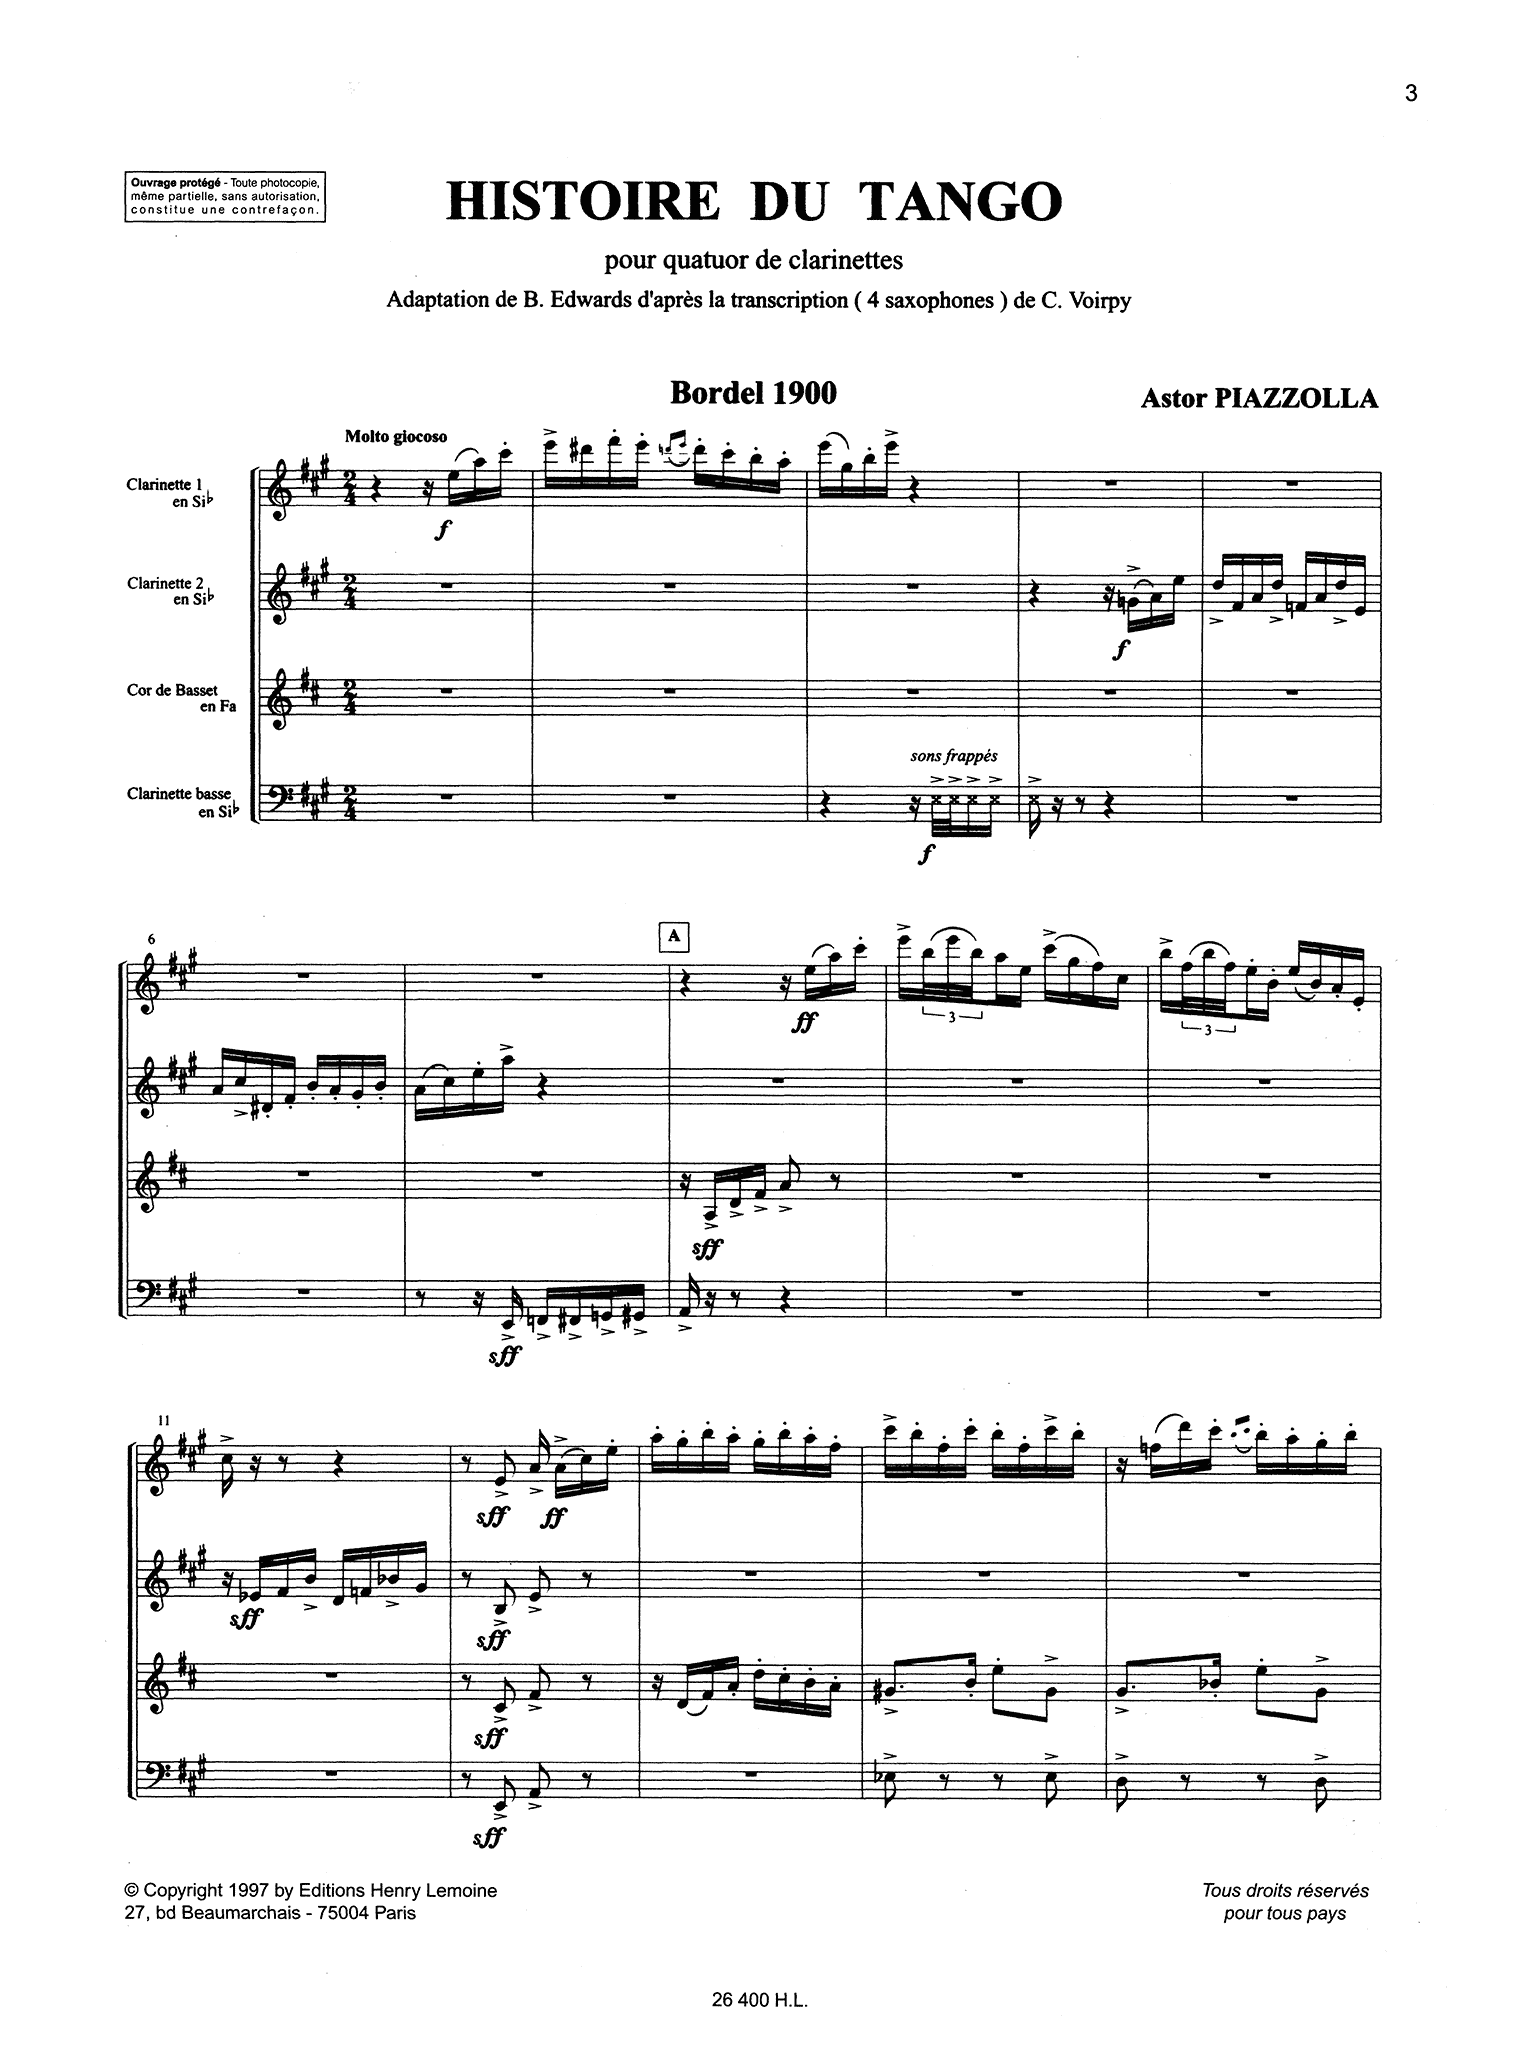 Piazzolla Histoire du Tango clarinet quartet arrangement - Movement 1